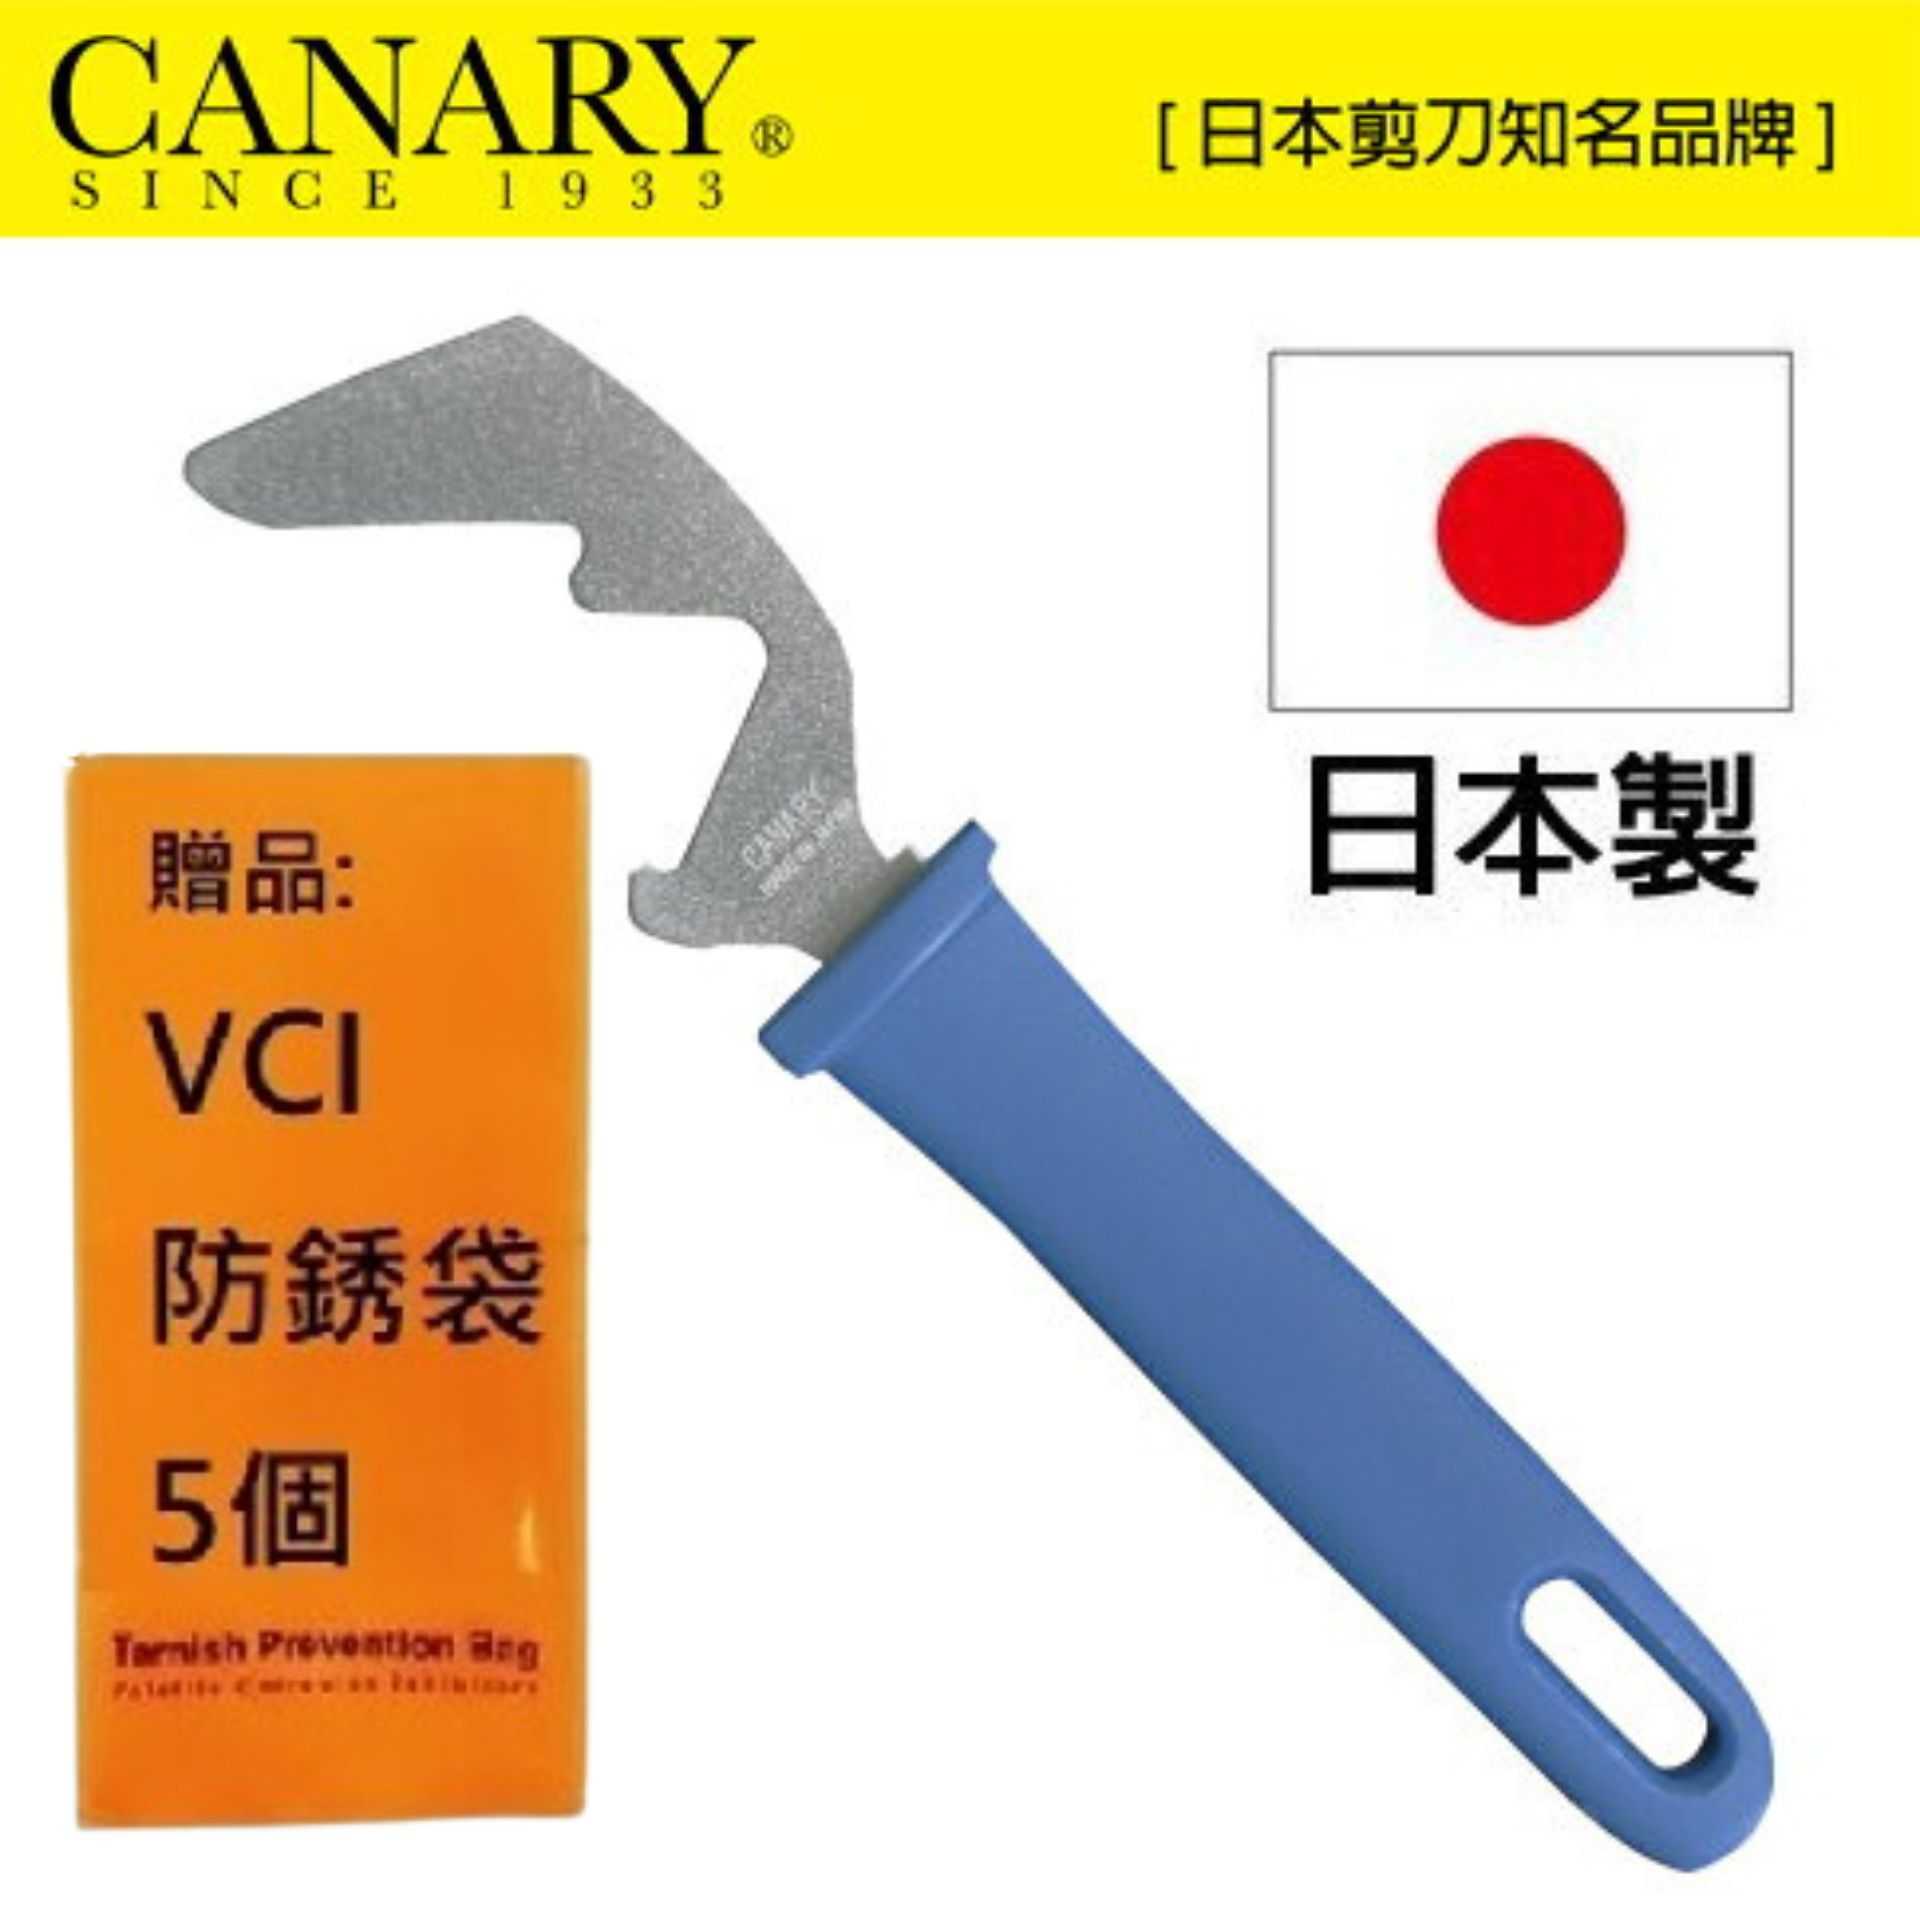 【日本CANARY】調味料瓶蓋拆除小幫手 RT-100 方便拆卸調味料上的塑膠瓶蓋